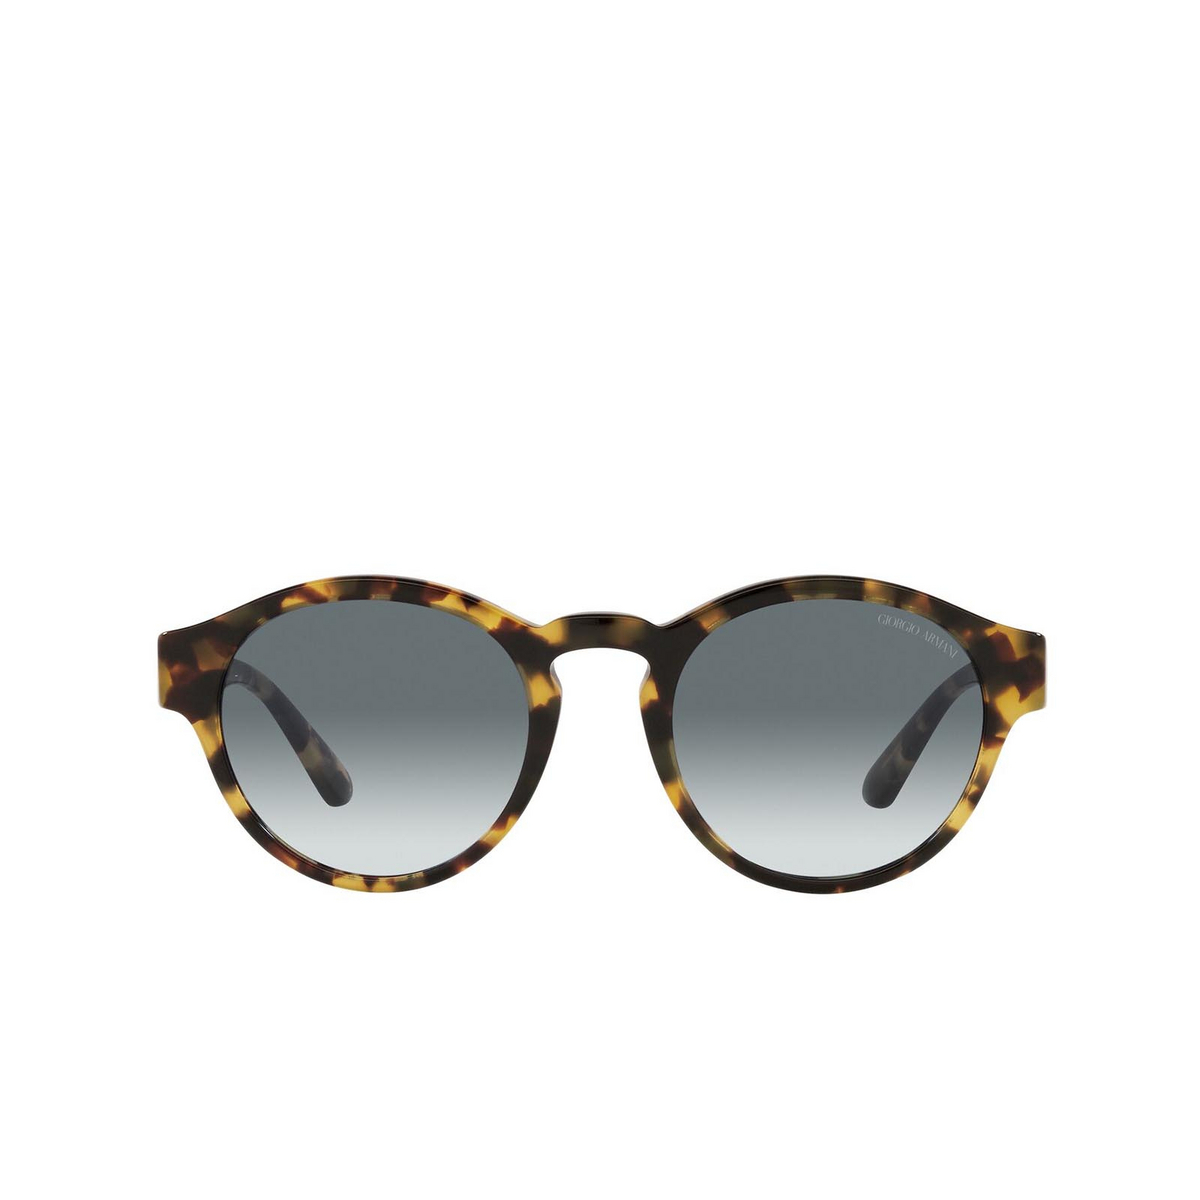 Giorgio Armani® Round Sunglasses: AR8146 color Yellow Havana 587486 - front view.